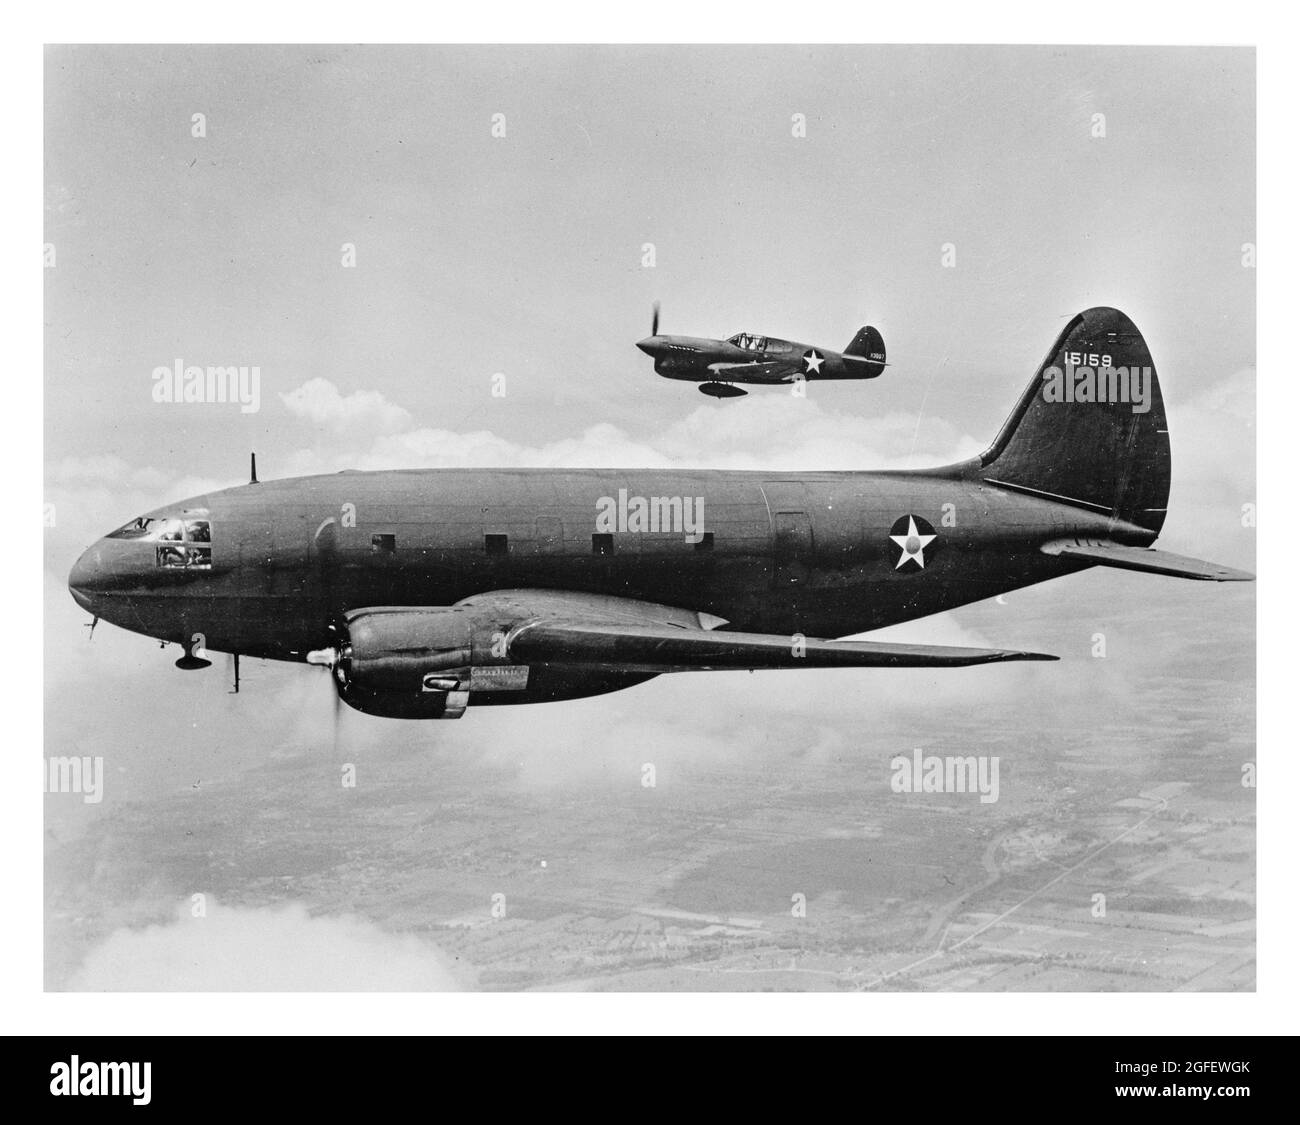 Avions en vol. Le navire au premier plan est un transport C-46. L'avion le plus éloigné est un chasseur P-40. 1943. Banque D'Images